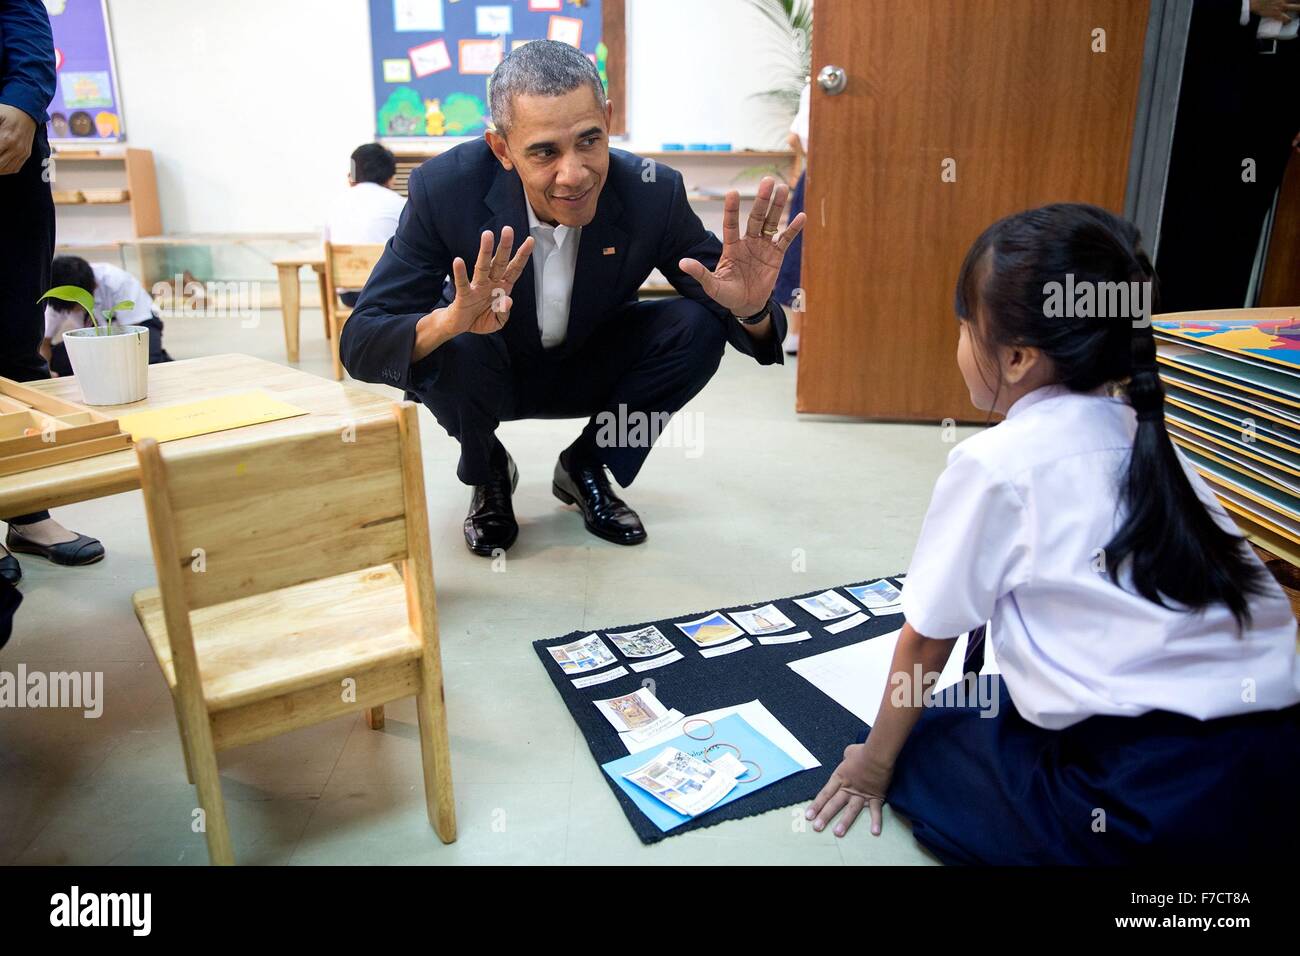 Le président des États-Unis, Barack Obama parle avec une jeune fille au cours d'une visite de la dignité pour les enfants le 21 novembre 2015 Fondation à Kuala Lumpur, Malaisie. Le Centre aide les familles pauvres et les réfugiés, y compris ceux du Myanmar et la Syrie. Banque D'Images